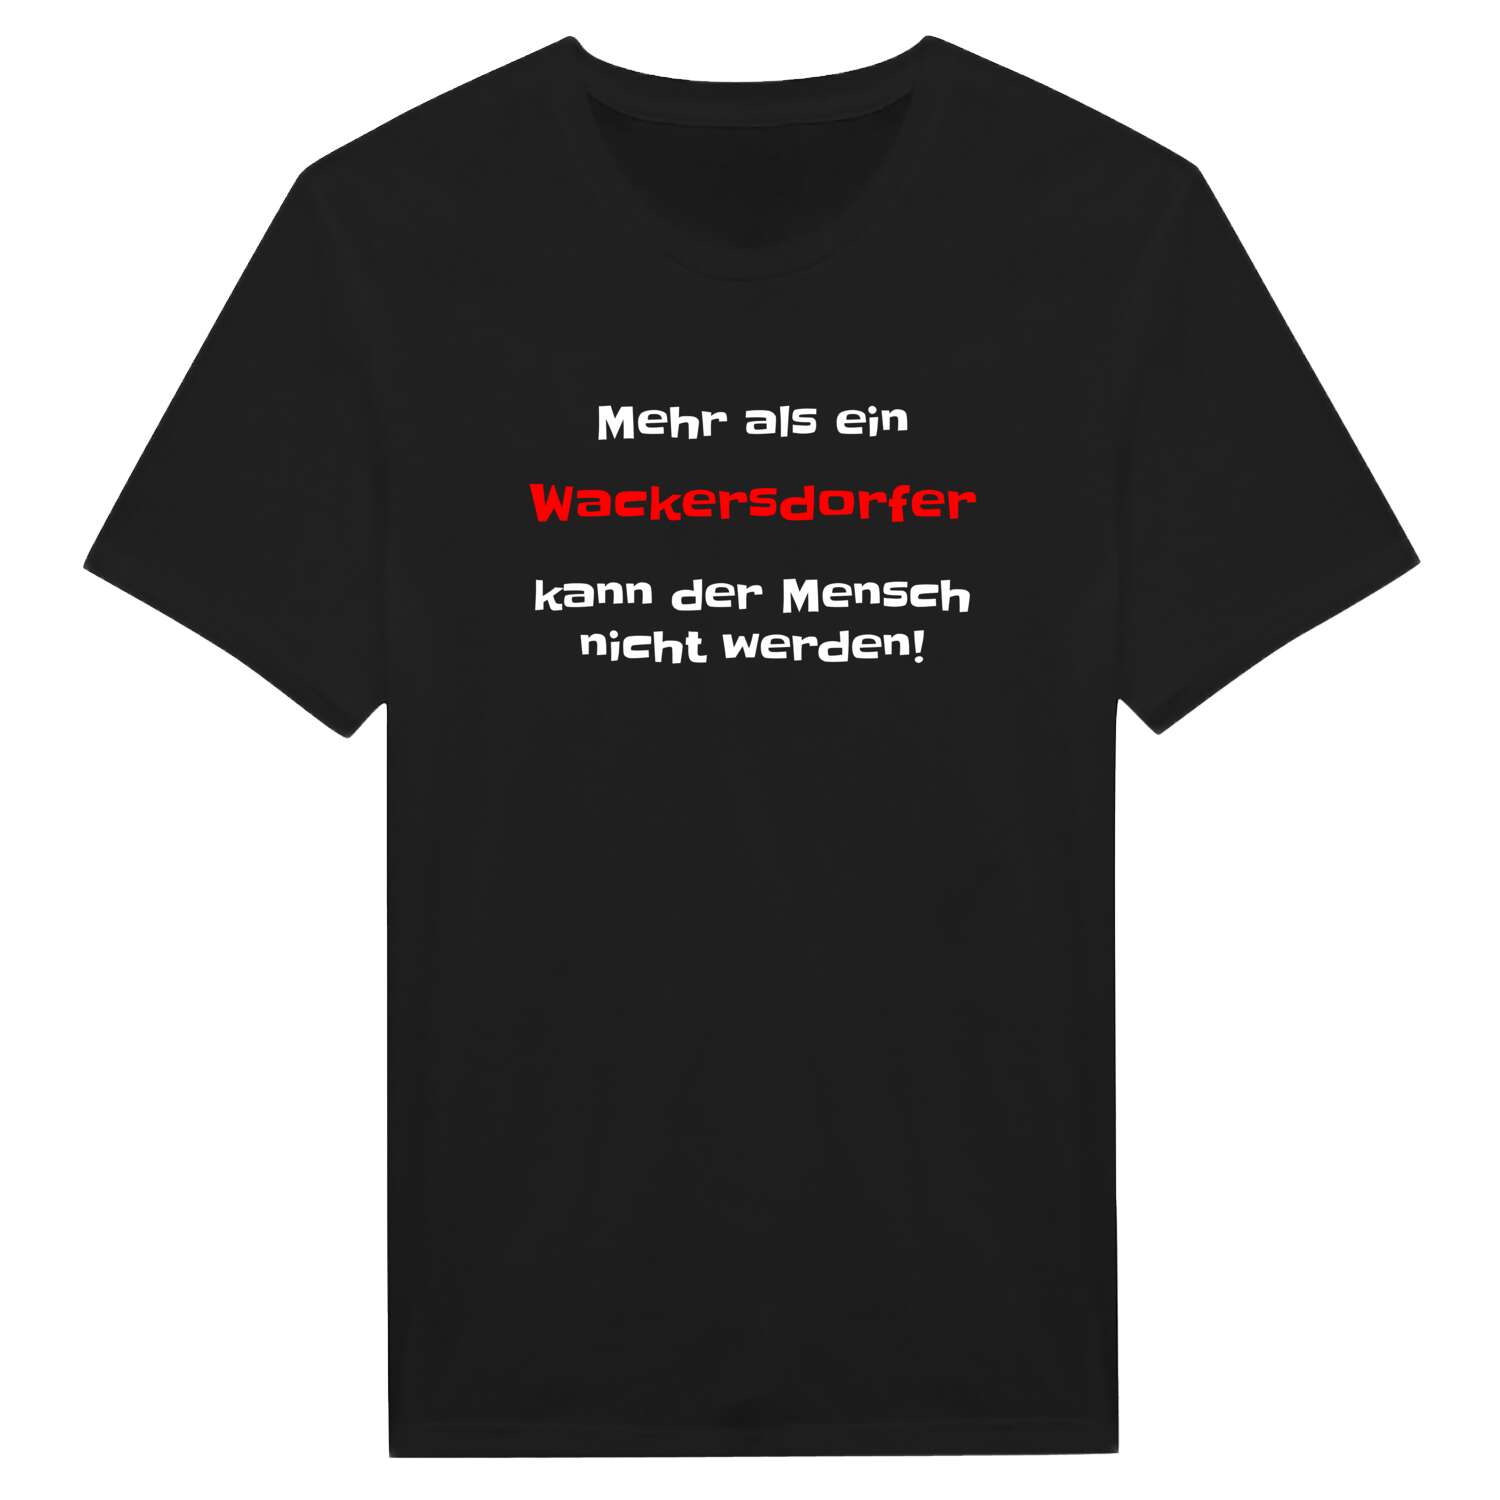 Wackersdorf T-Shirt »Mehr als ein«